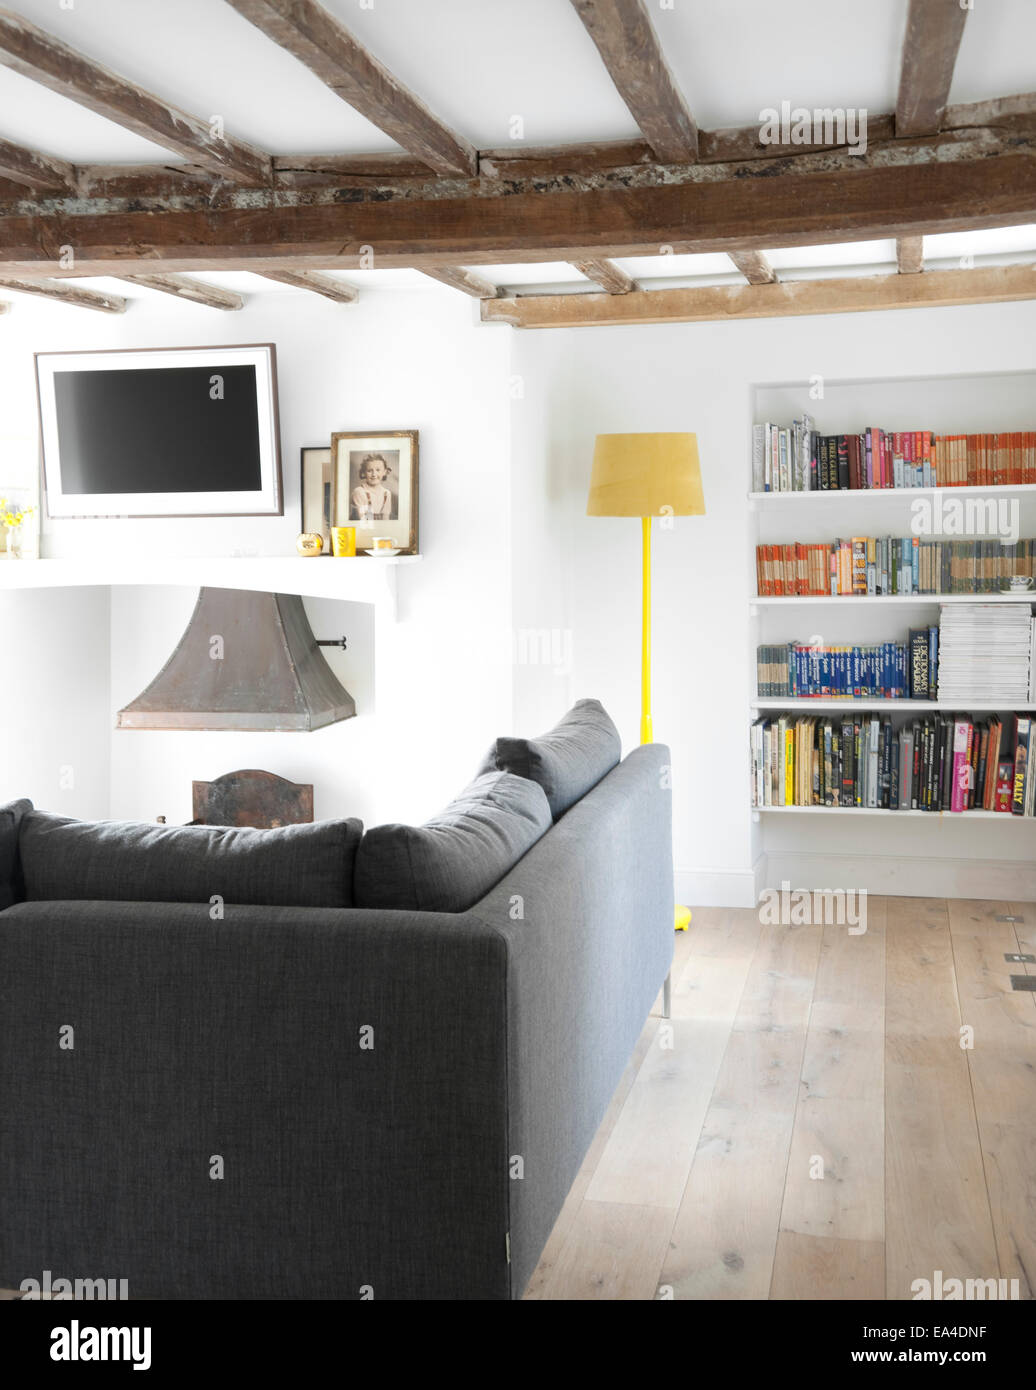 Wohnzimmer mit Bücherregal und grau Sofa im Landhaus Interieur, UK. Stockfoto